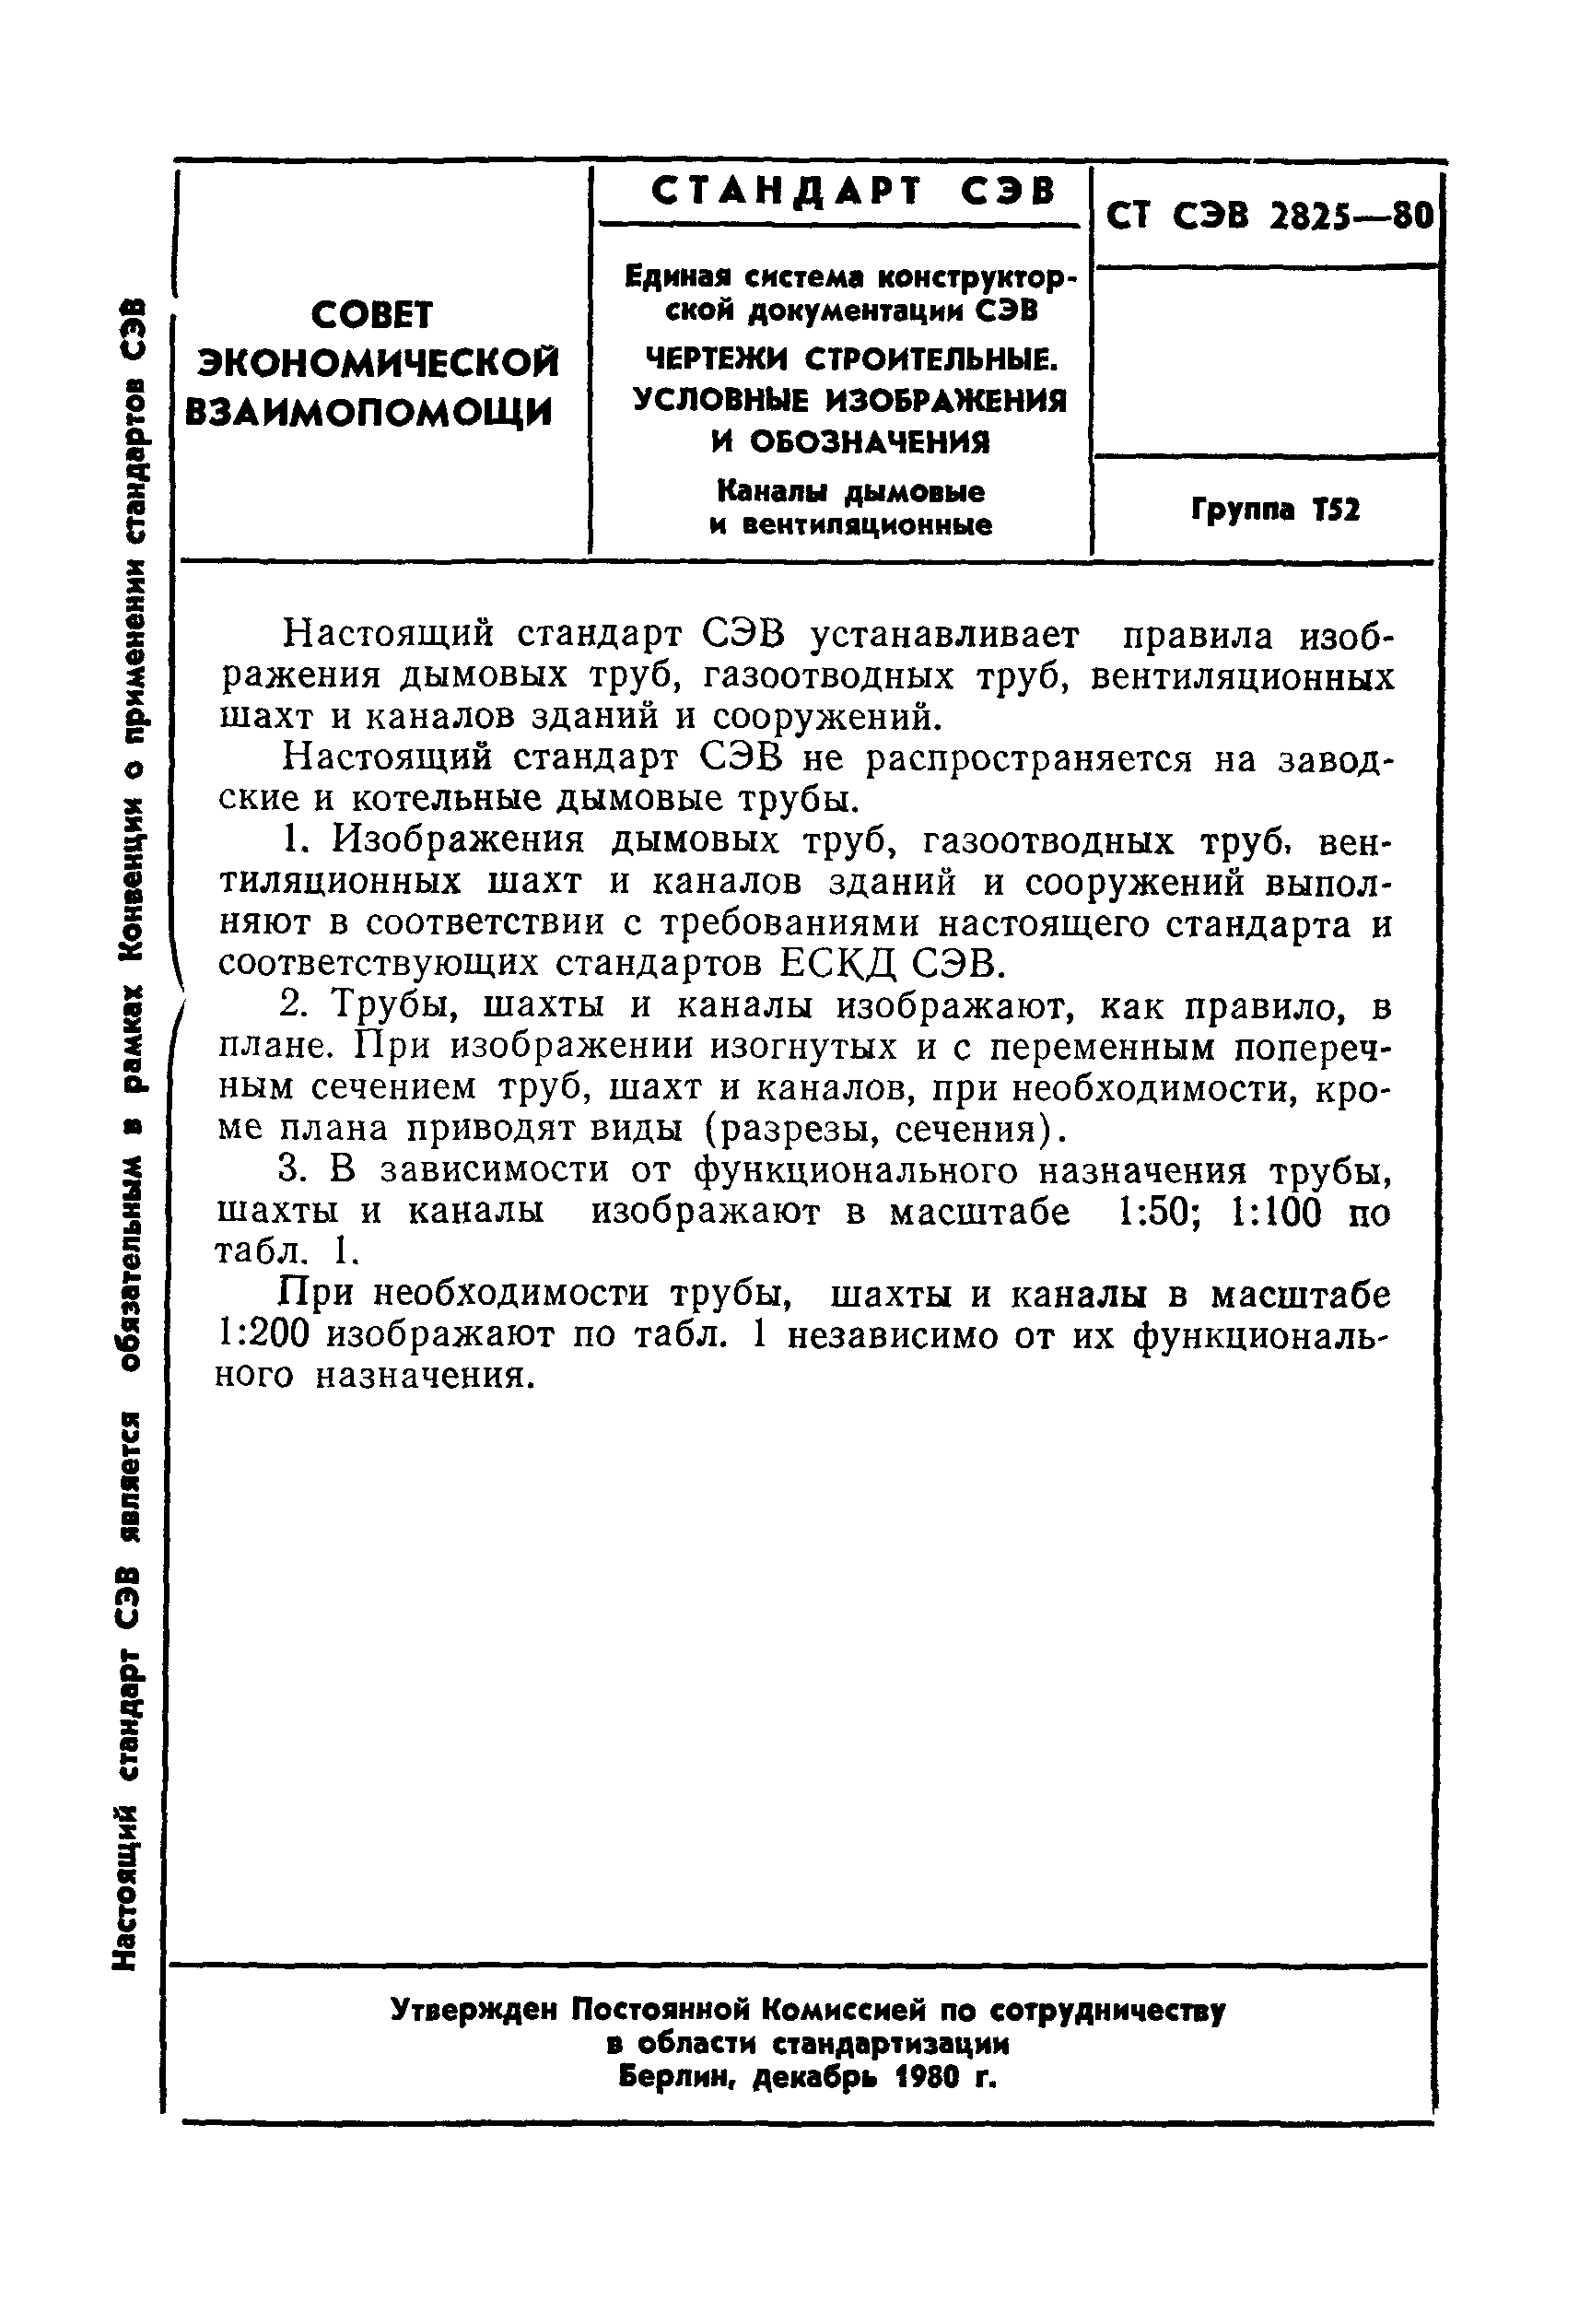 СТ СЭВ 2825-80